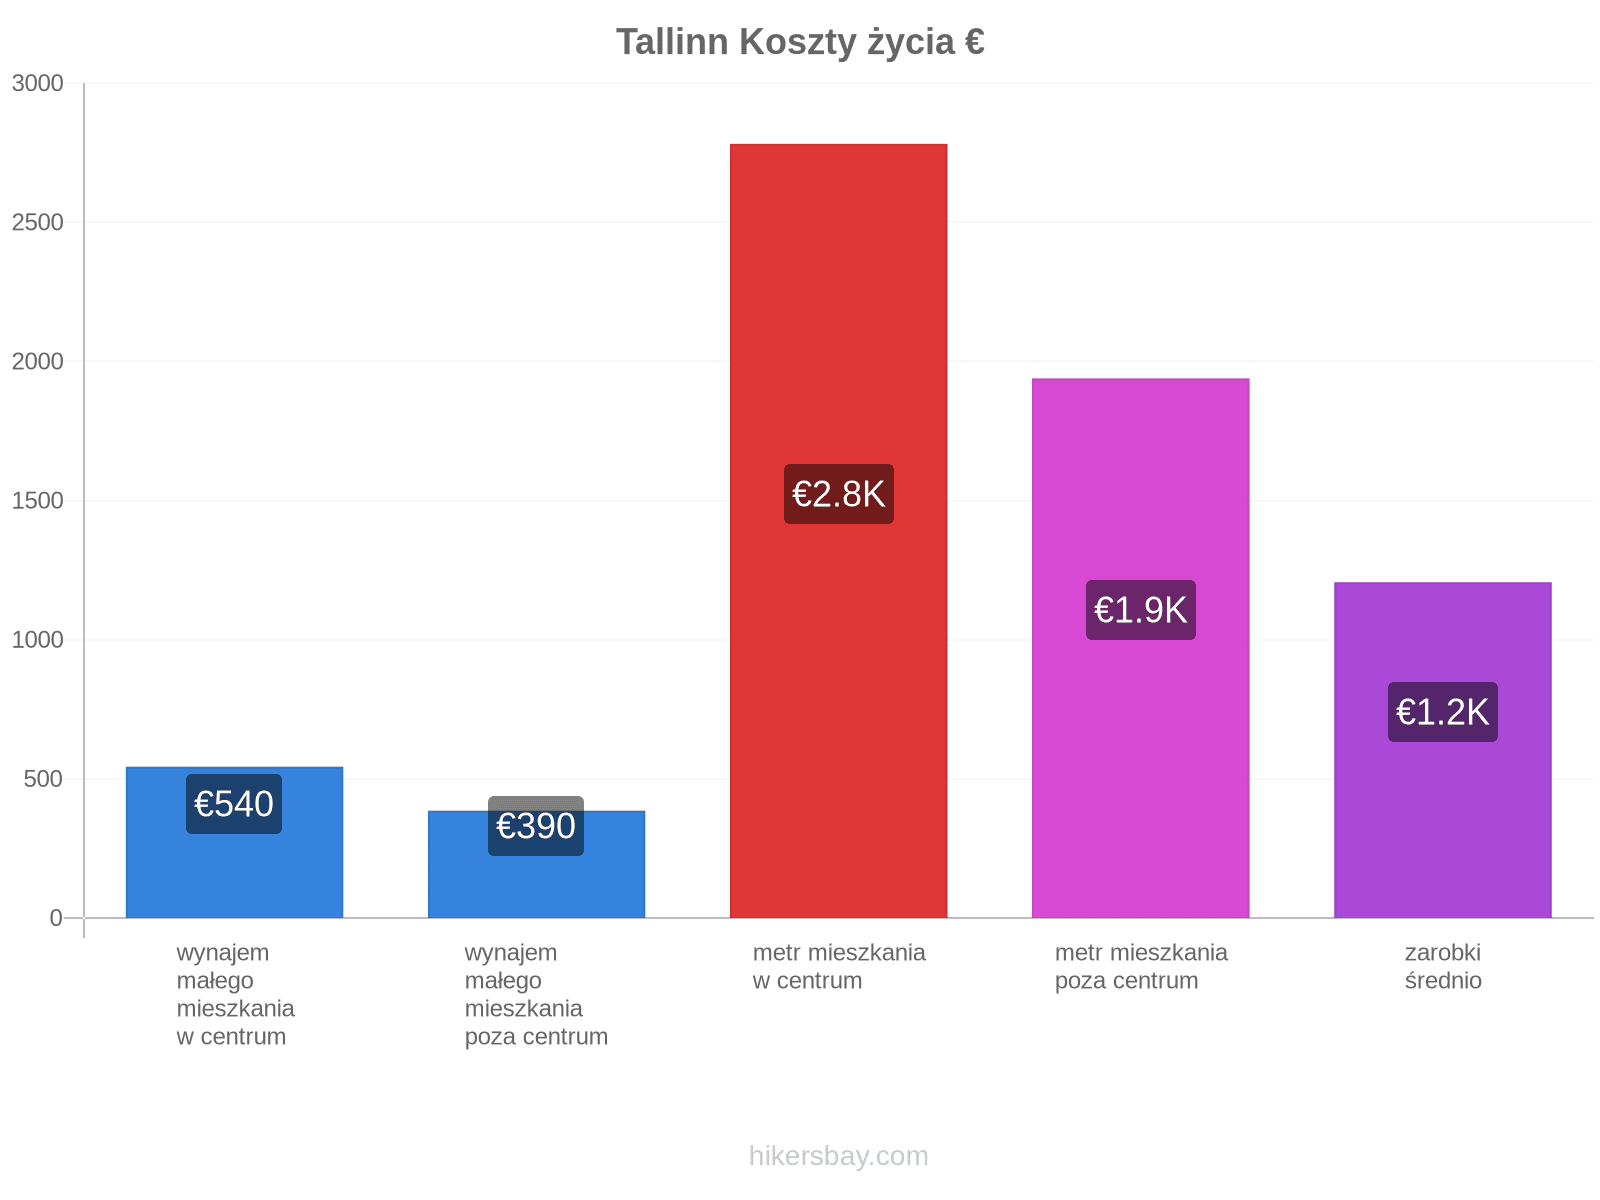 Tallinn koszty życia hikersbay.com